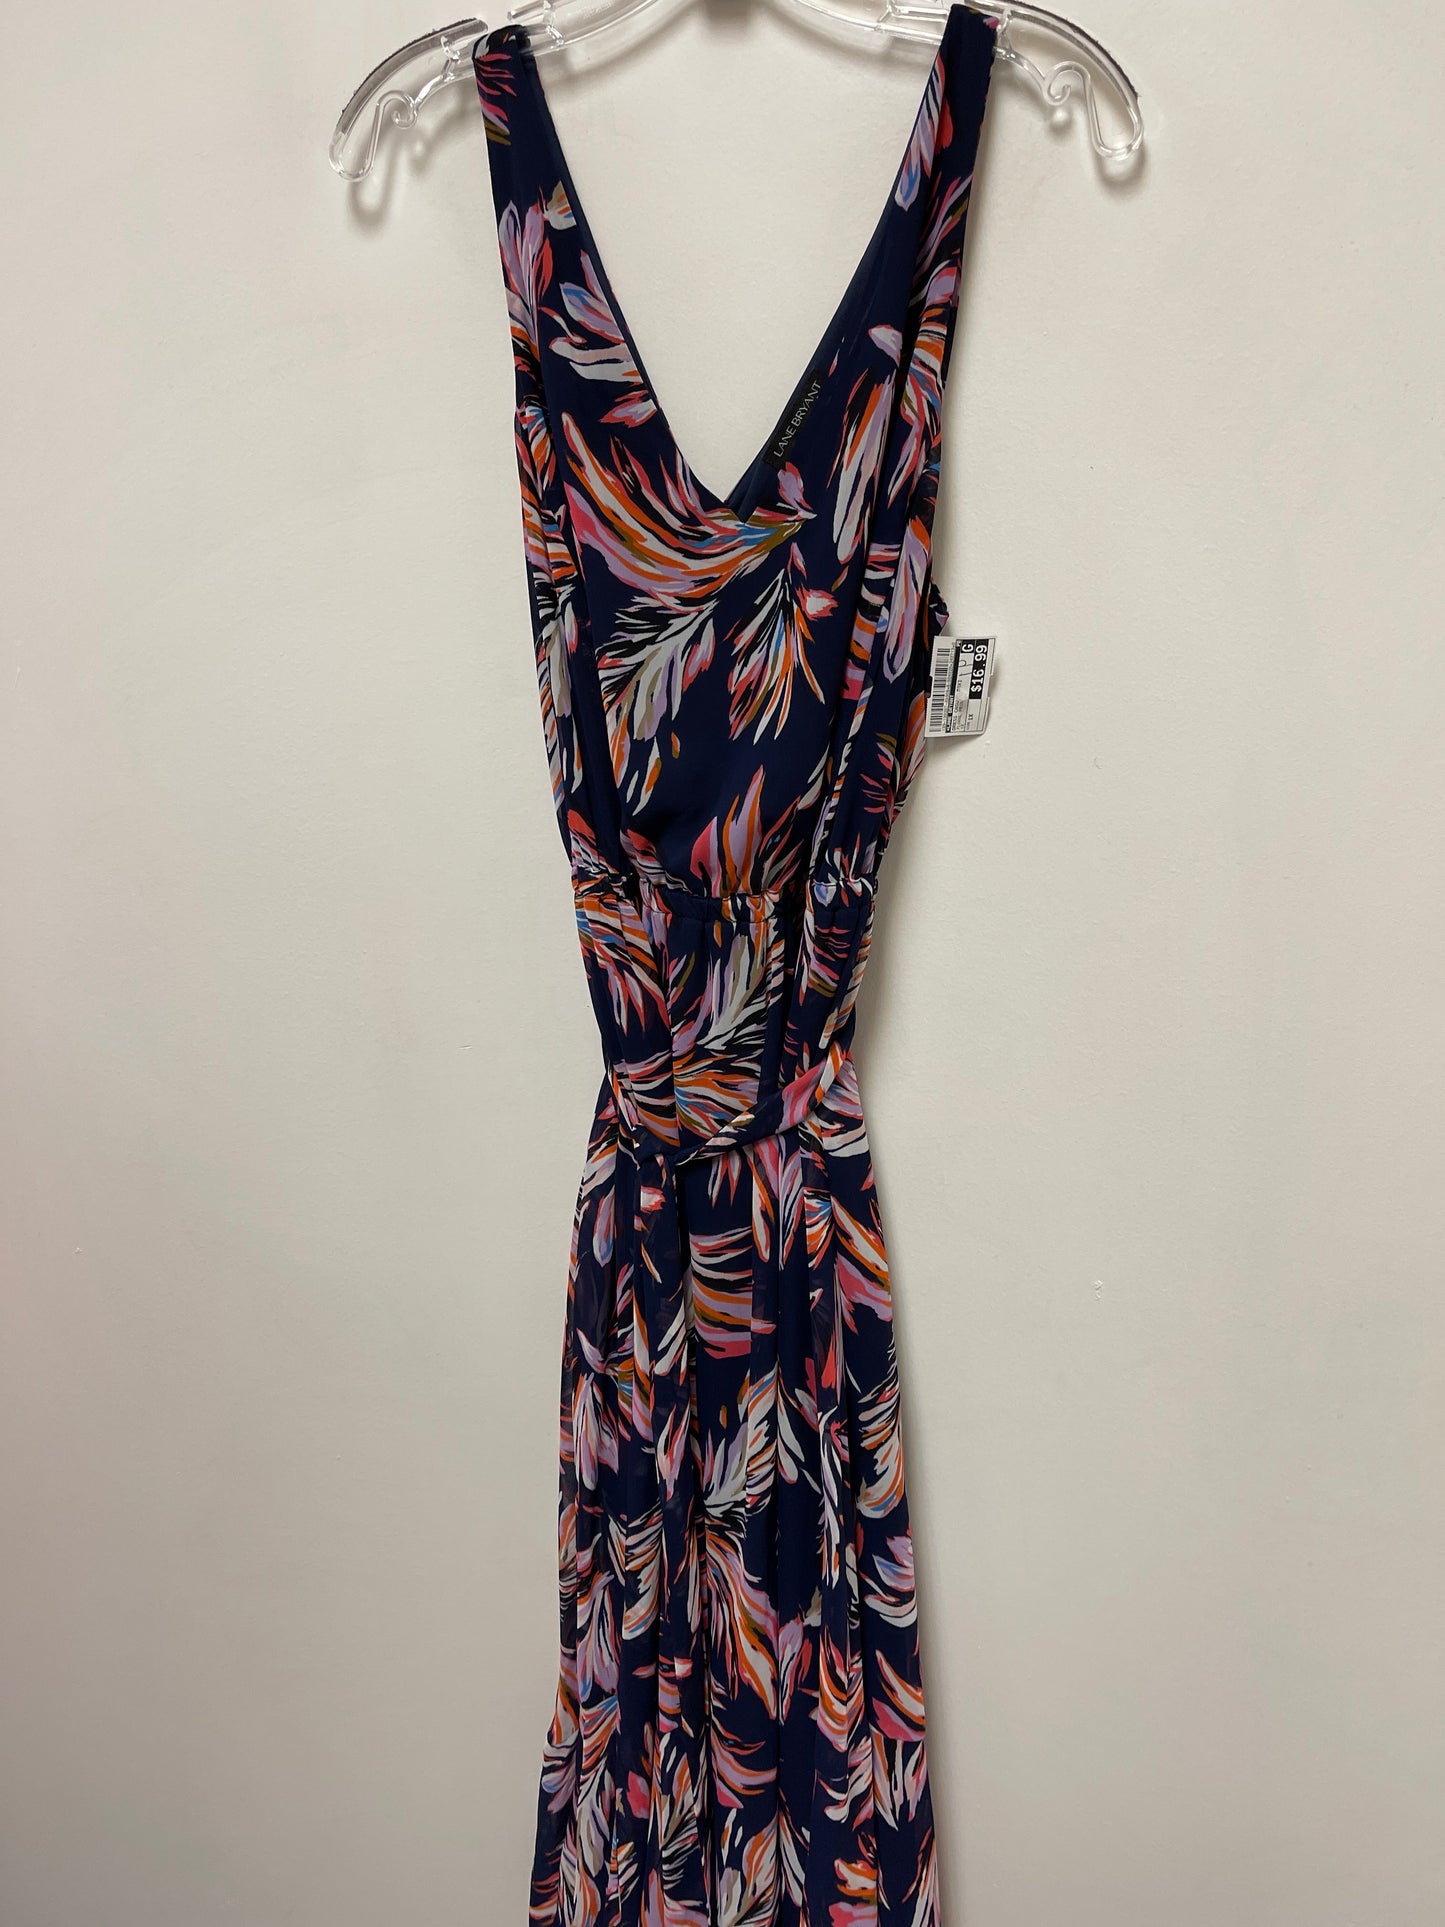 Floral Print Dress Casual Maxi Lane Bryant, Size 1x